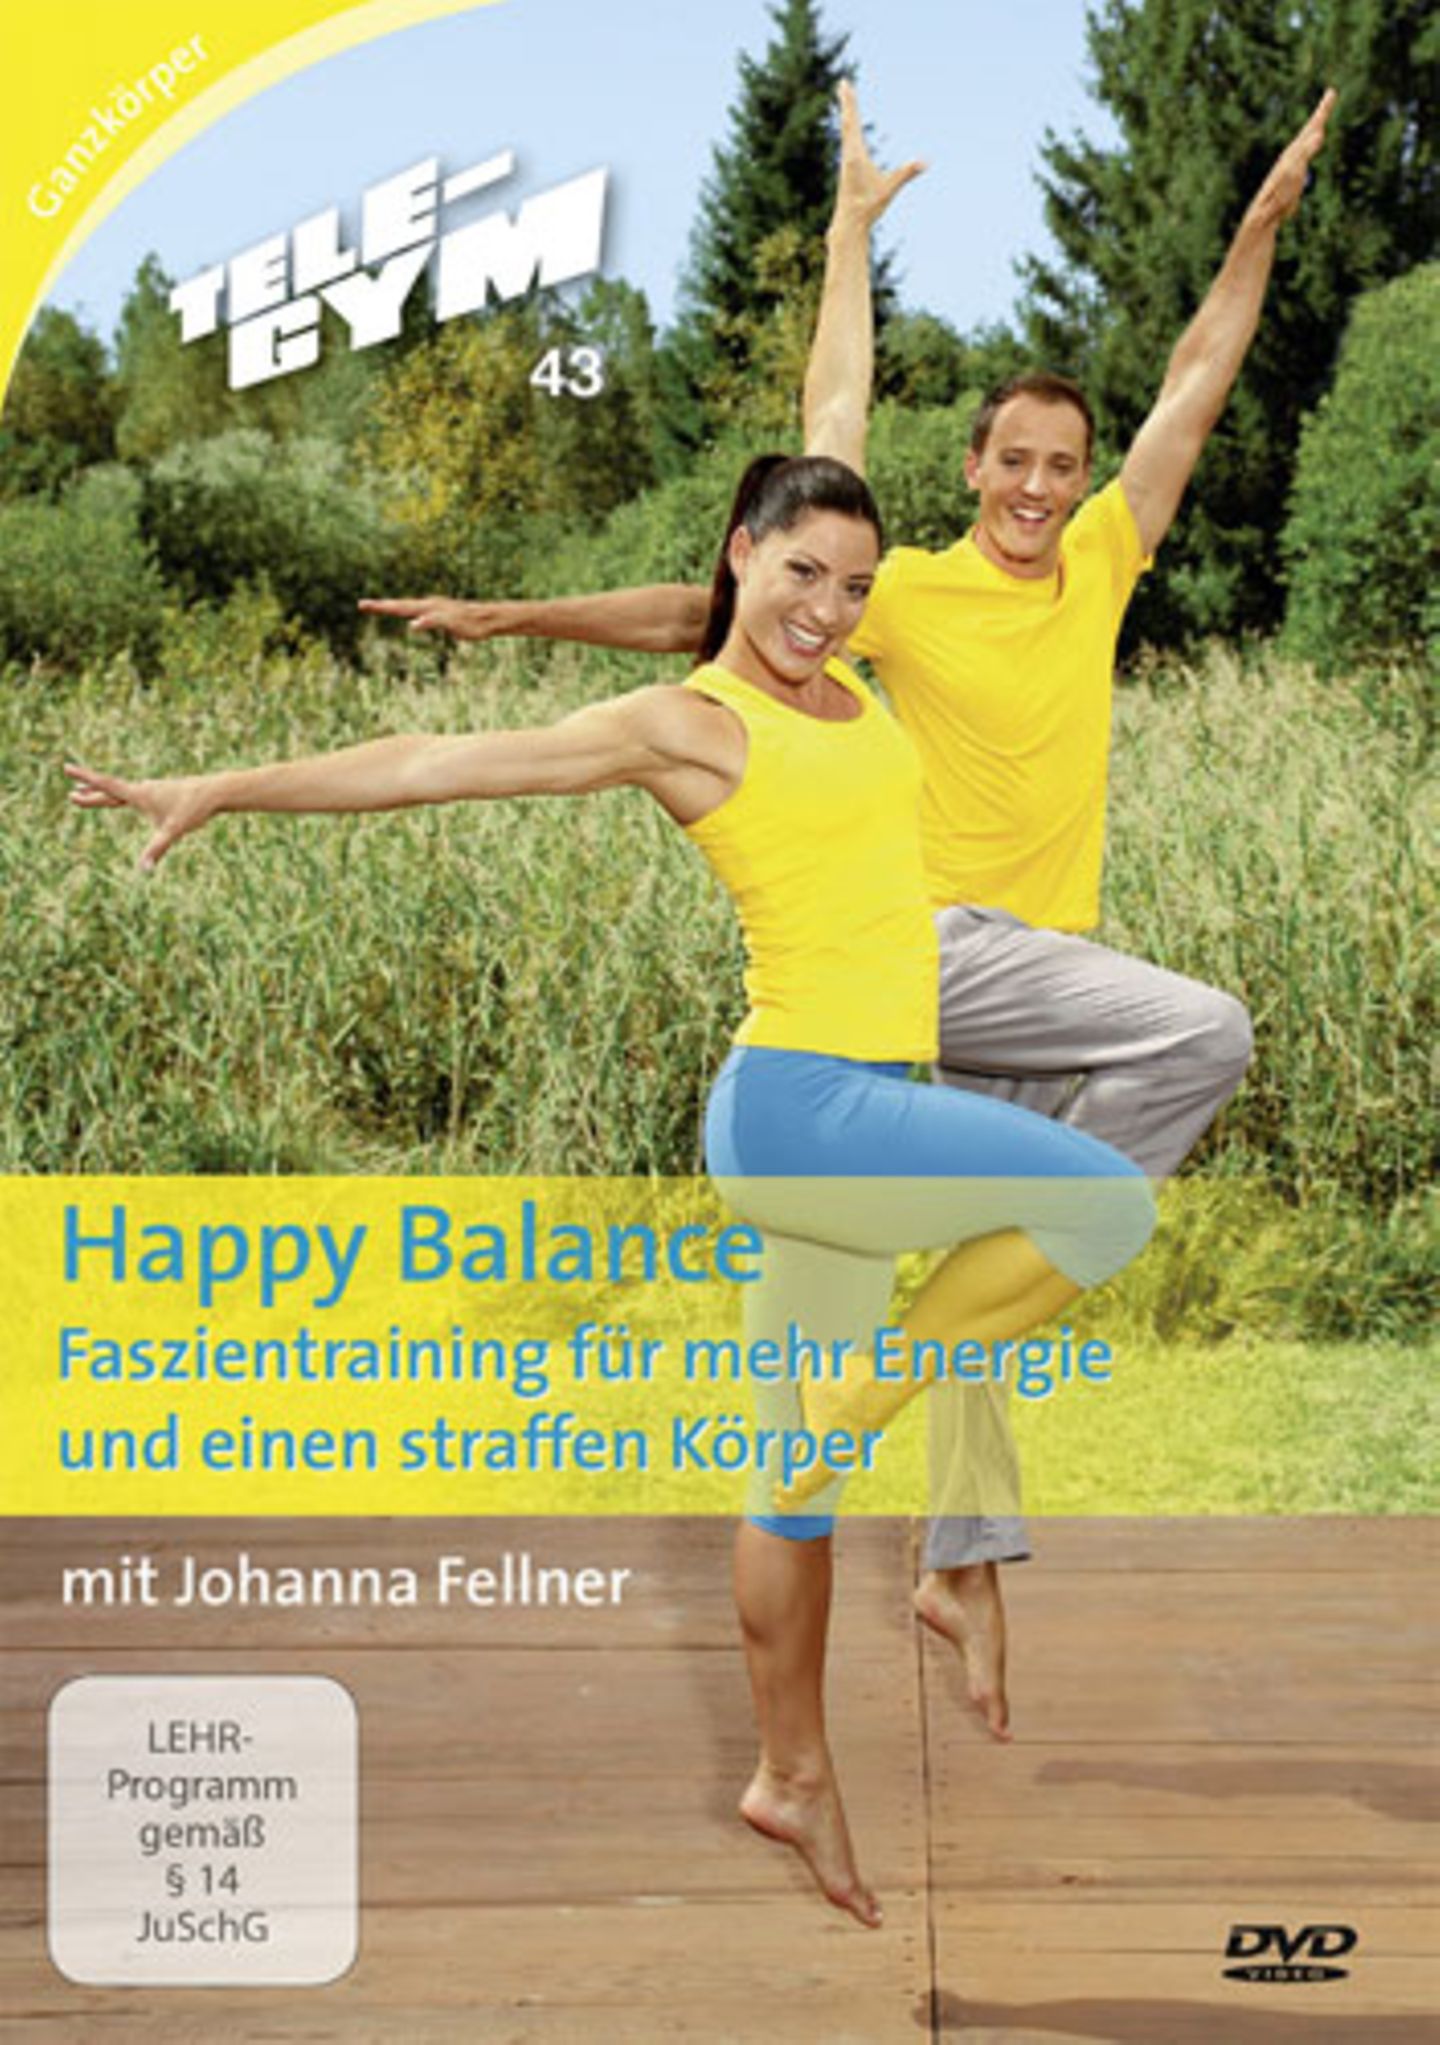 Mehr Übungen für das Bindegewebe gibt es in der folgenden Tele-Gym-Folge mit Johanna Fellner: "Happy Balance - Faszientraining für mehr Energie und eine straffe Figur".